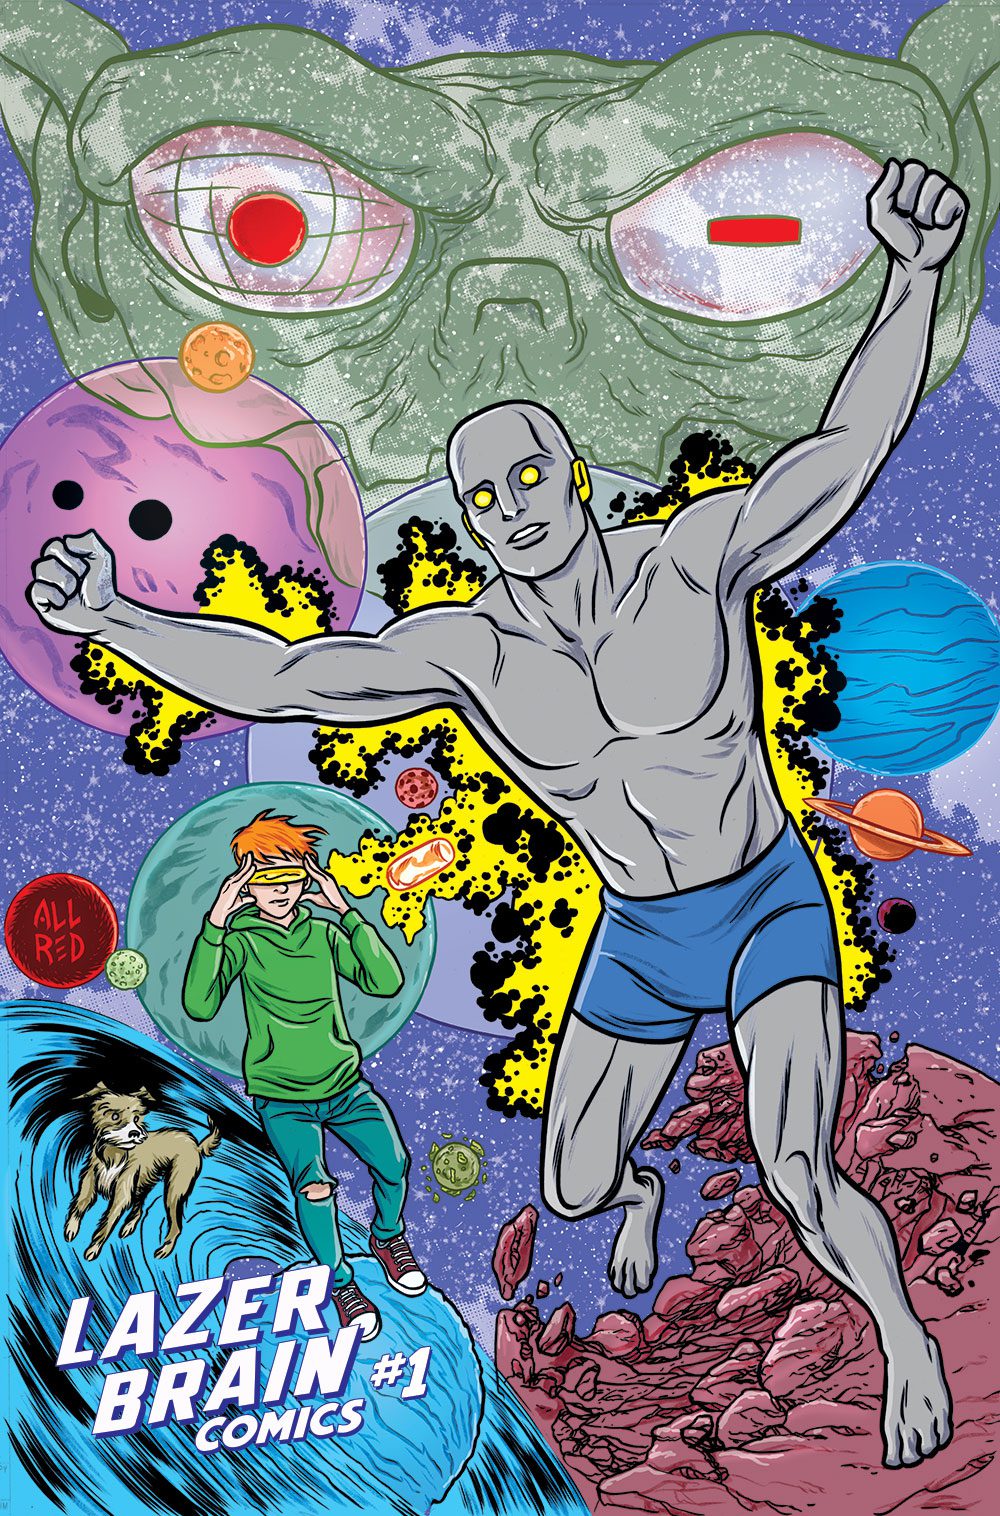 Lazer Brain Comics #1 (MIKE ALLRED 1/10 VARIANT)